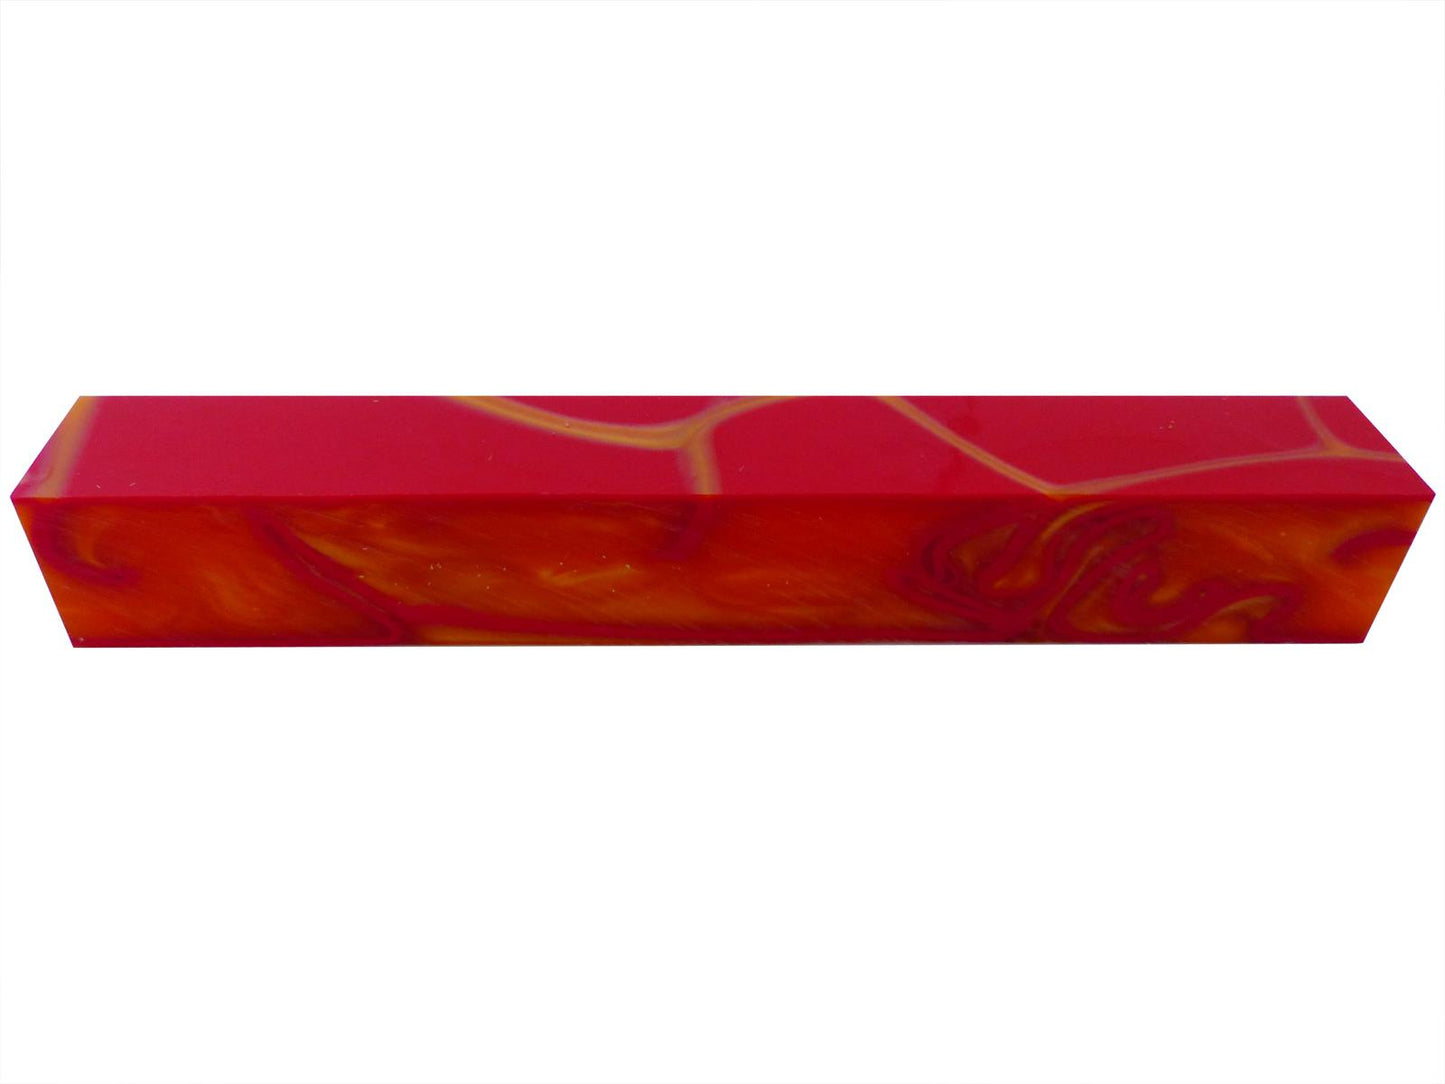 Turners' Mill Kirinite Orange Sunspot Orange/Red Abstract Kirinite Acrylic Pen Blank - 150x20x20mm (5.9x0.79x0.79"), 6x3/4x3/4"